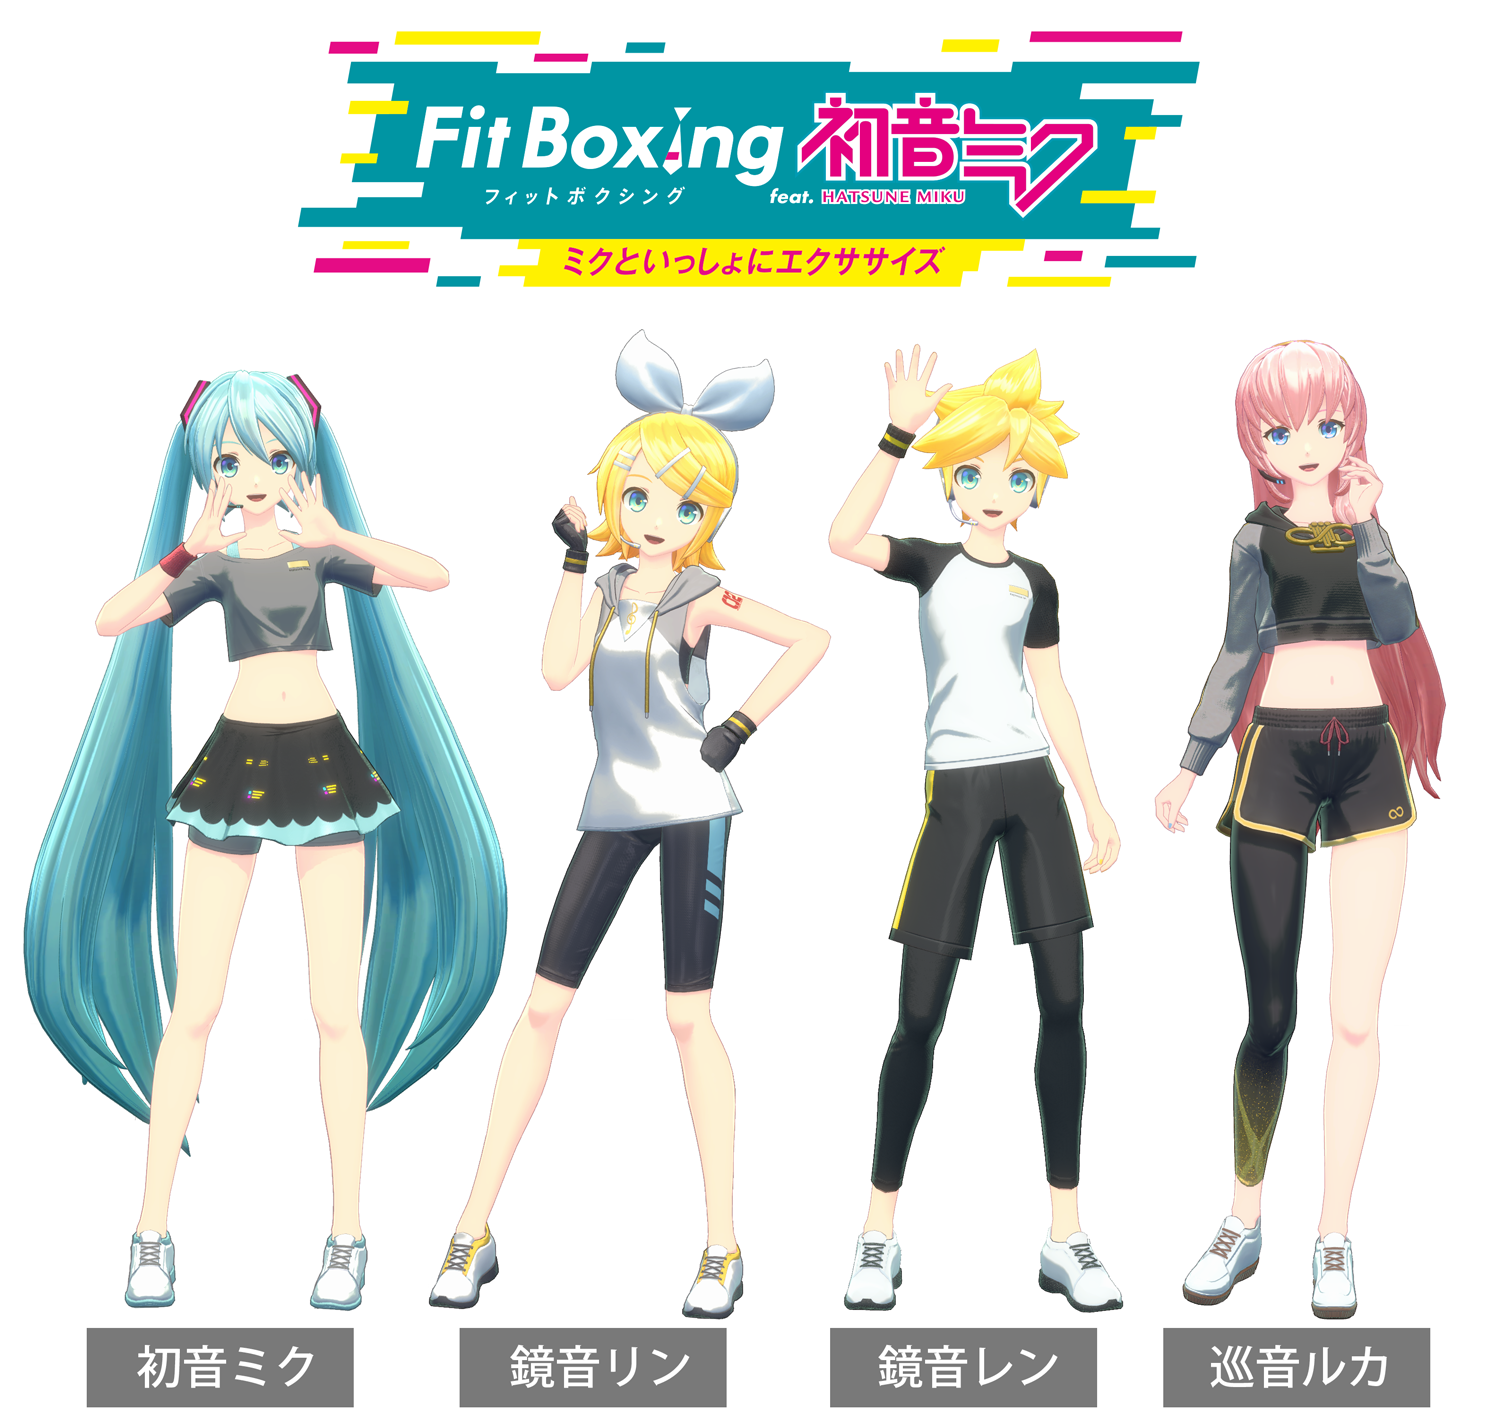 「Fit Boxing feat. 初音ミク -ミクといっしょにエクササイズ-」パートナーキャラクター公開のお知らせ1